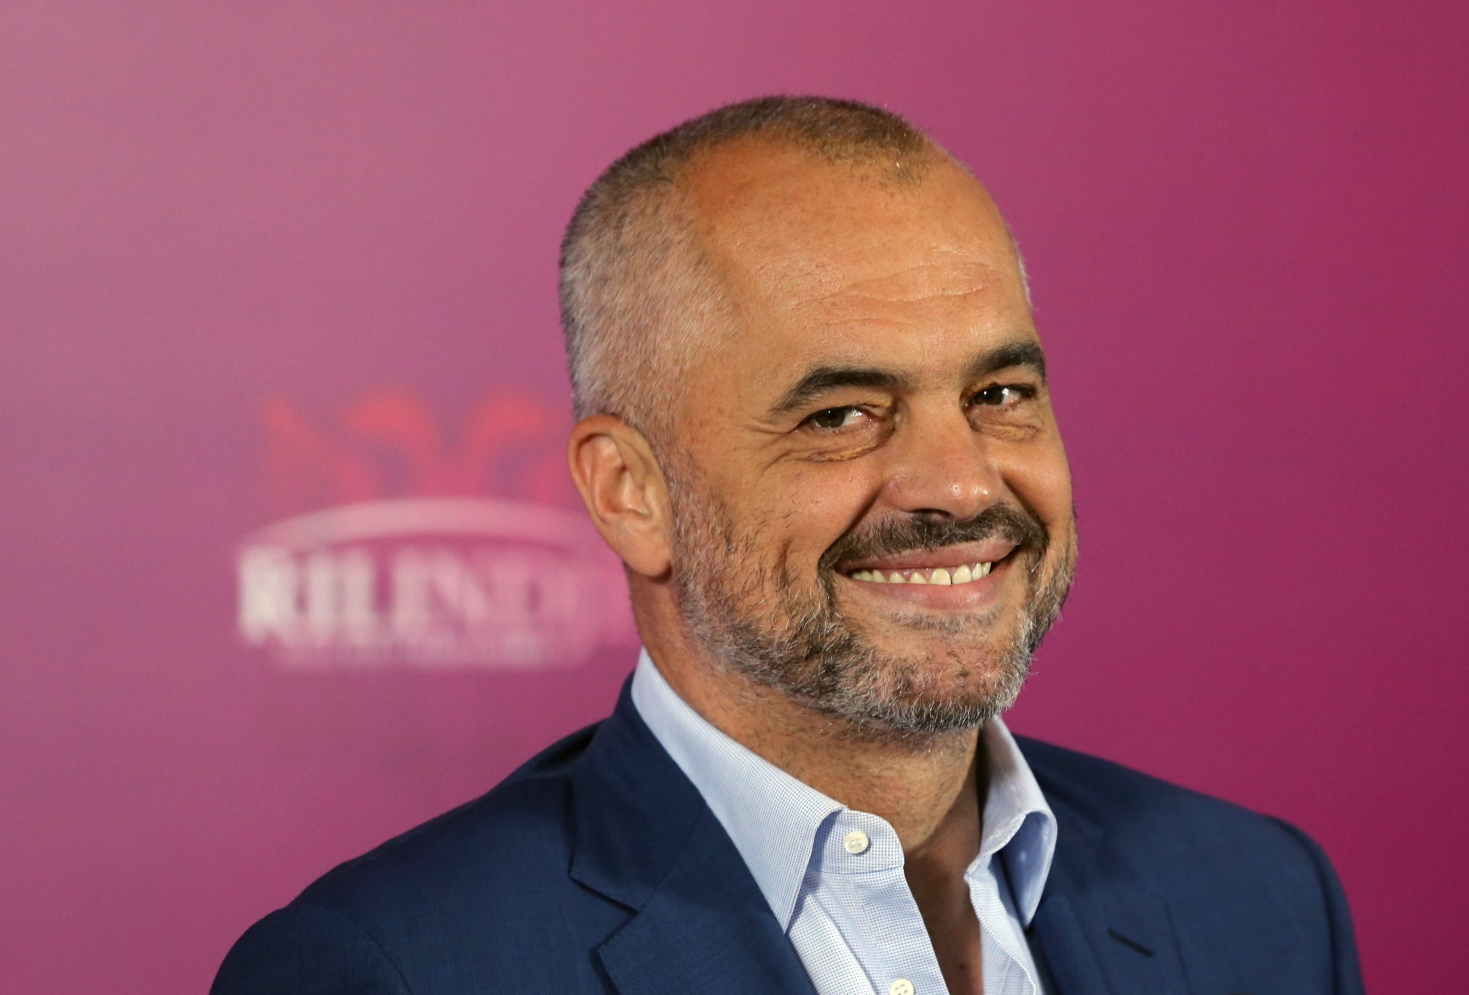 Meta dekreton emërimin e Ramës për kryeministër të Shqipërisë